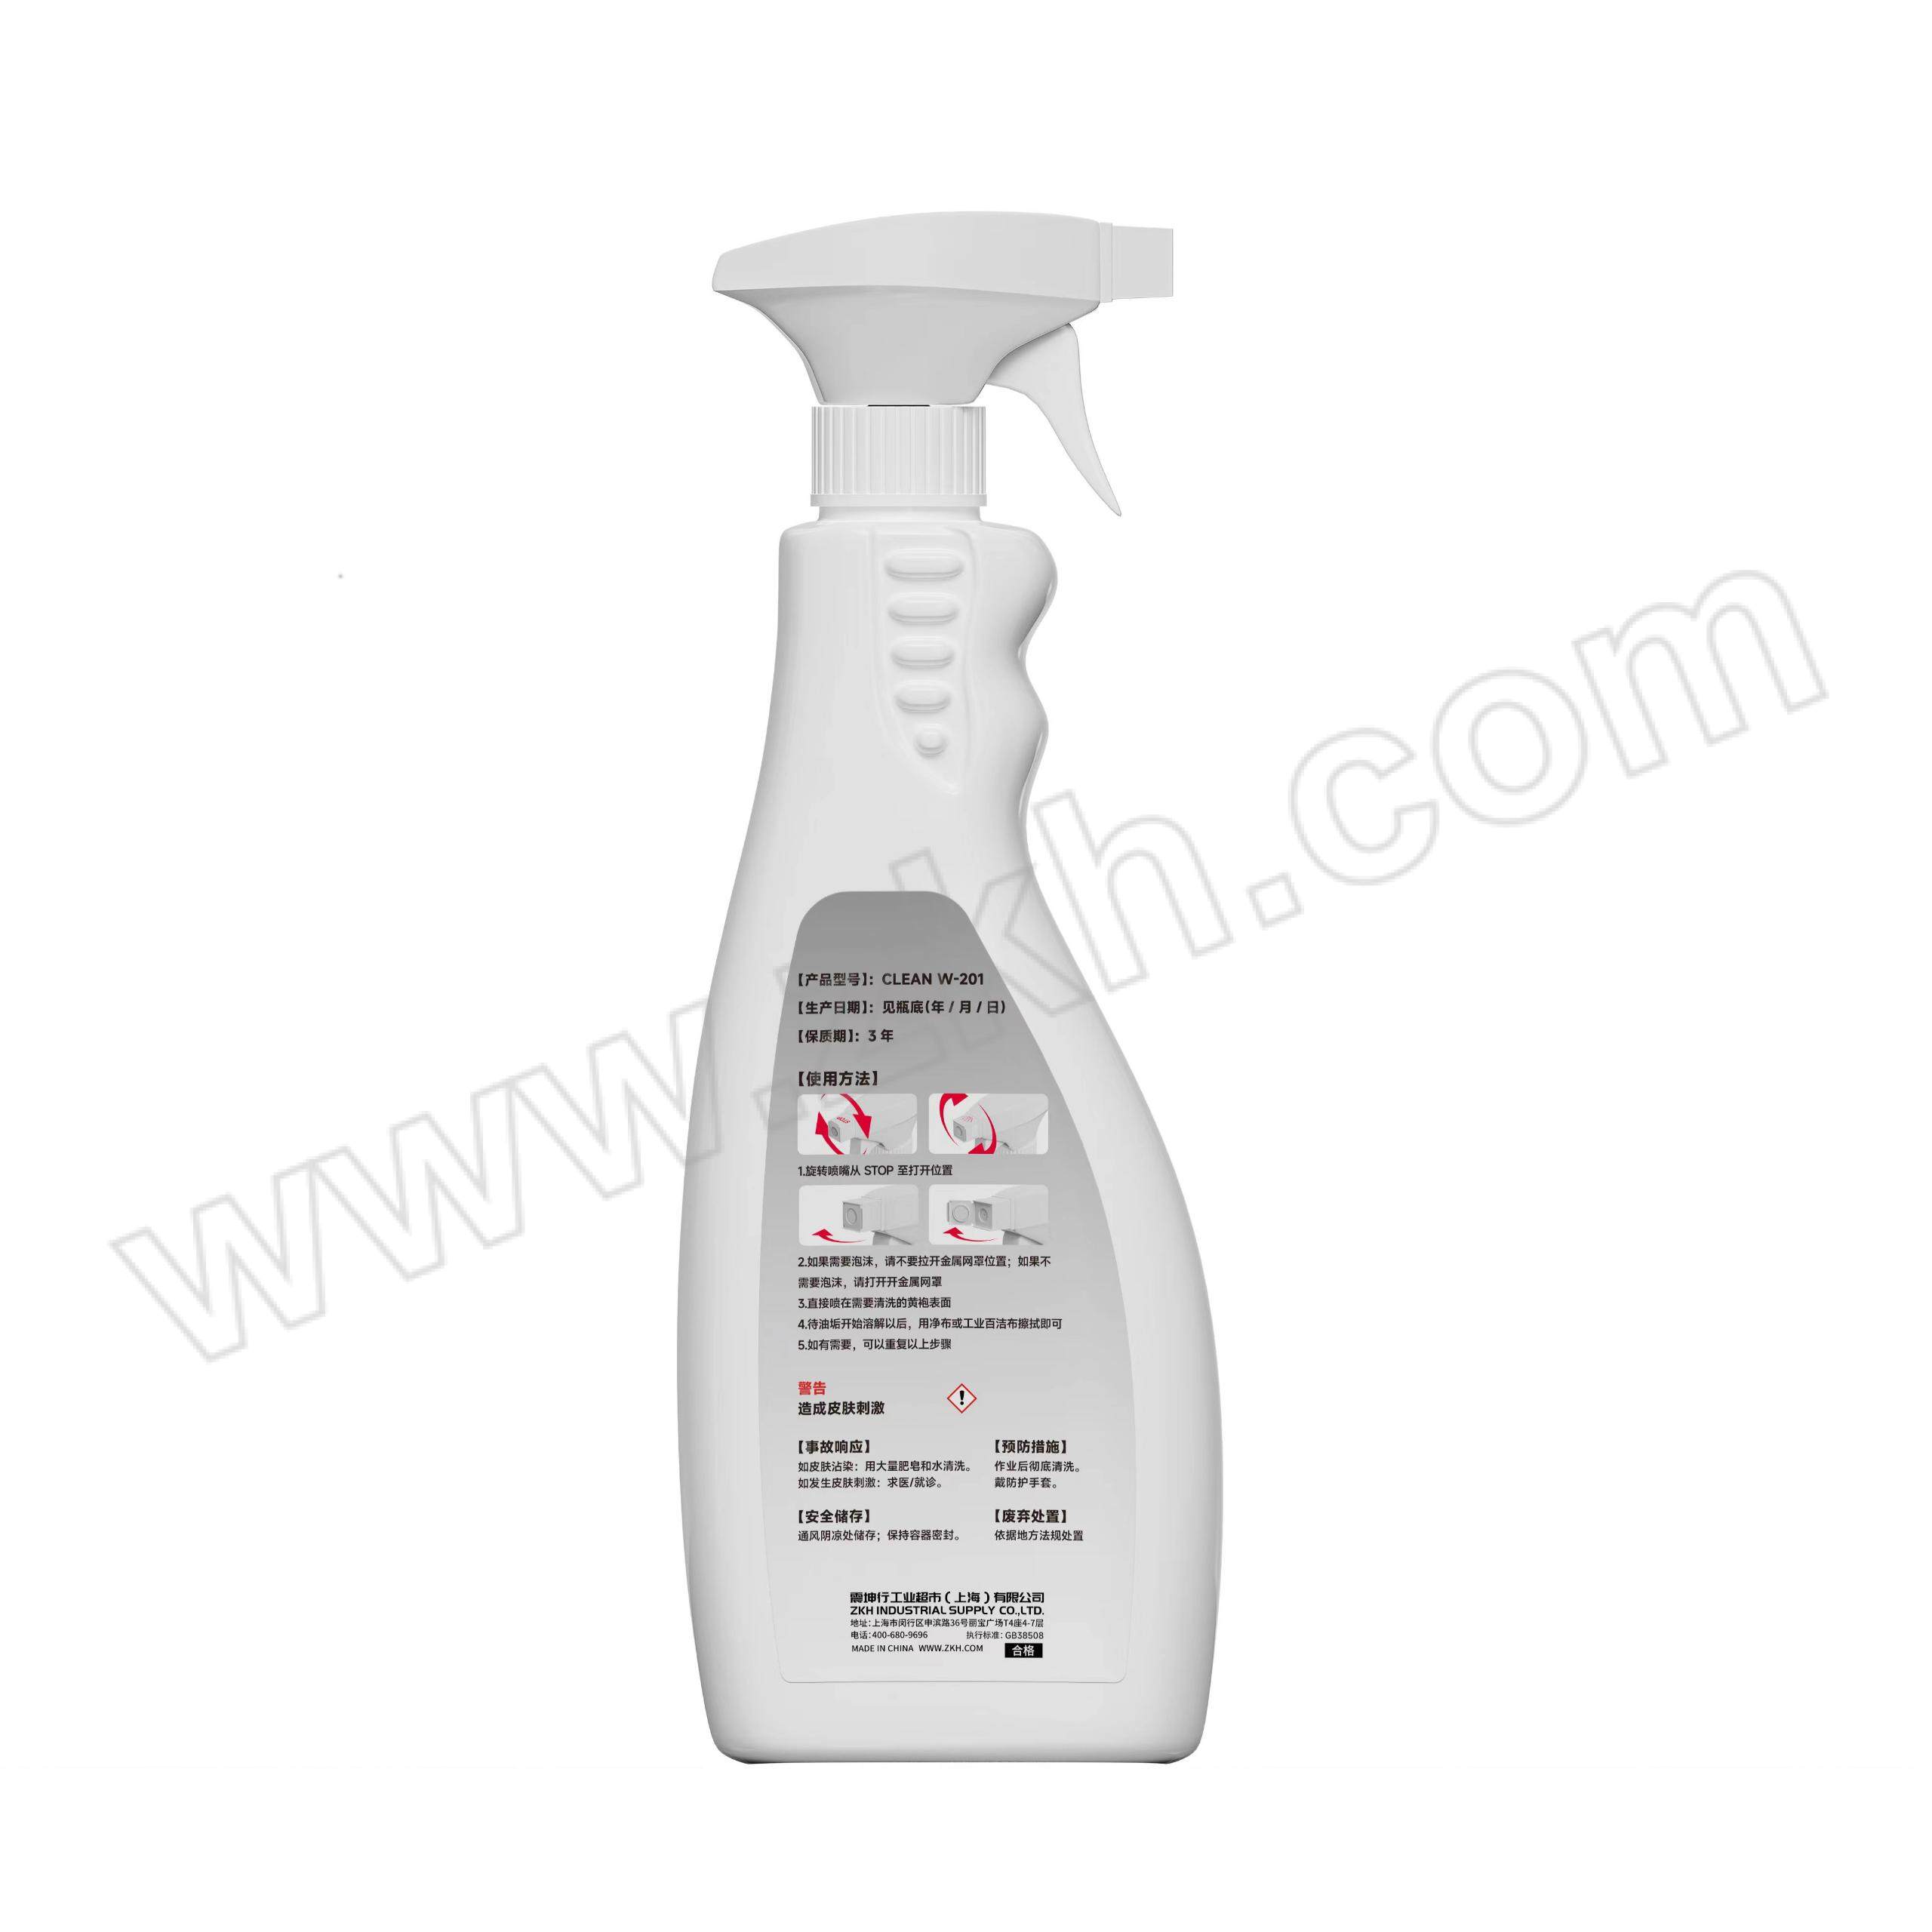 ZKH/震坤行 强力油污清洗剂 CLEAN W-201 500mL 1瓶